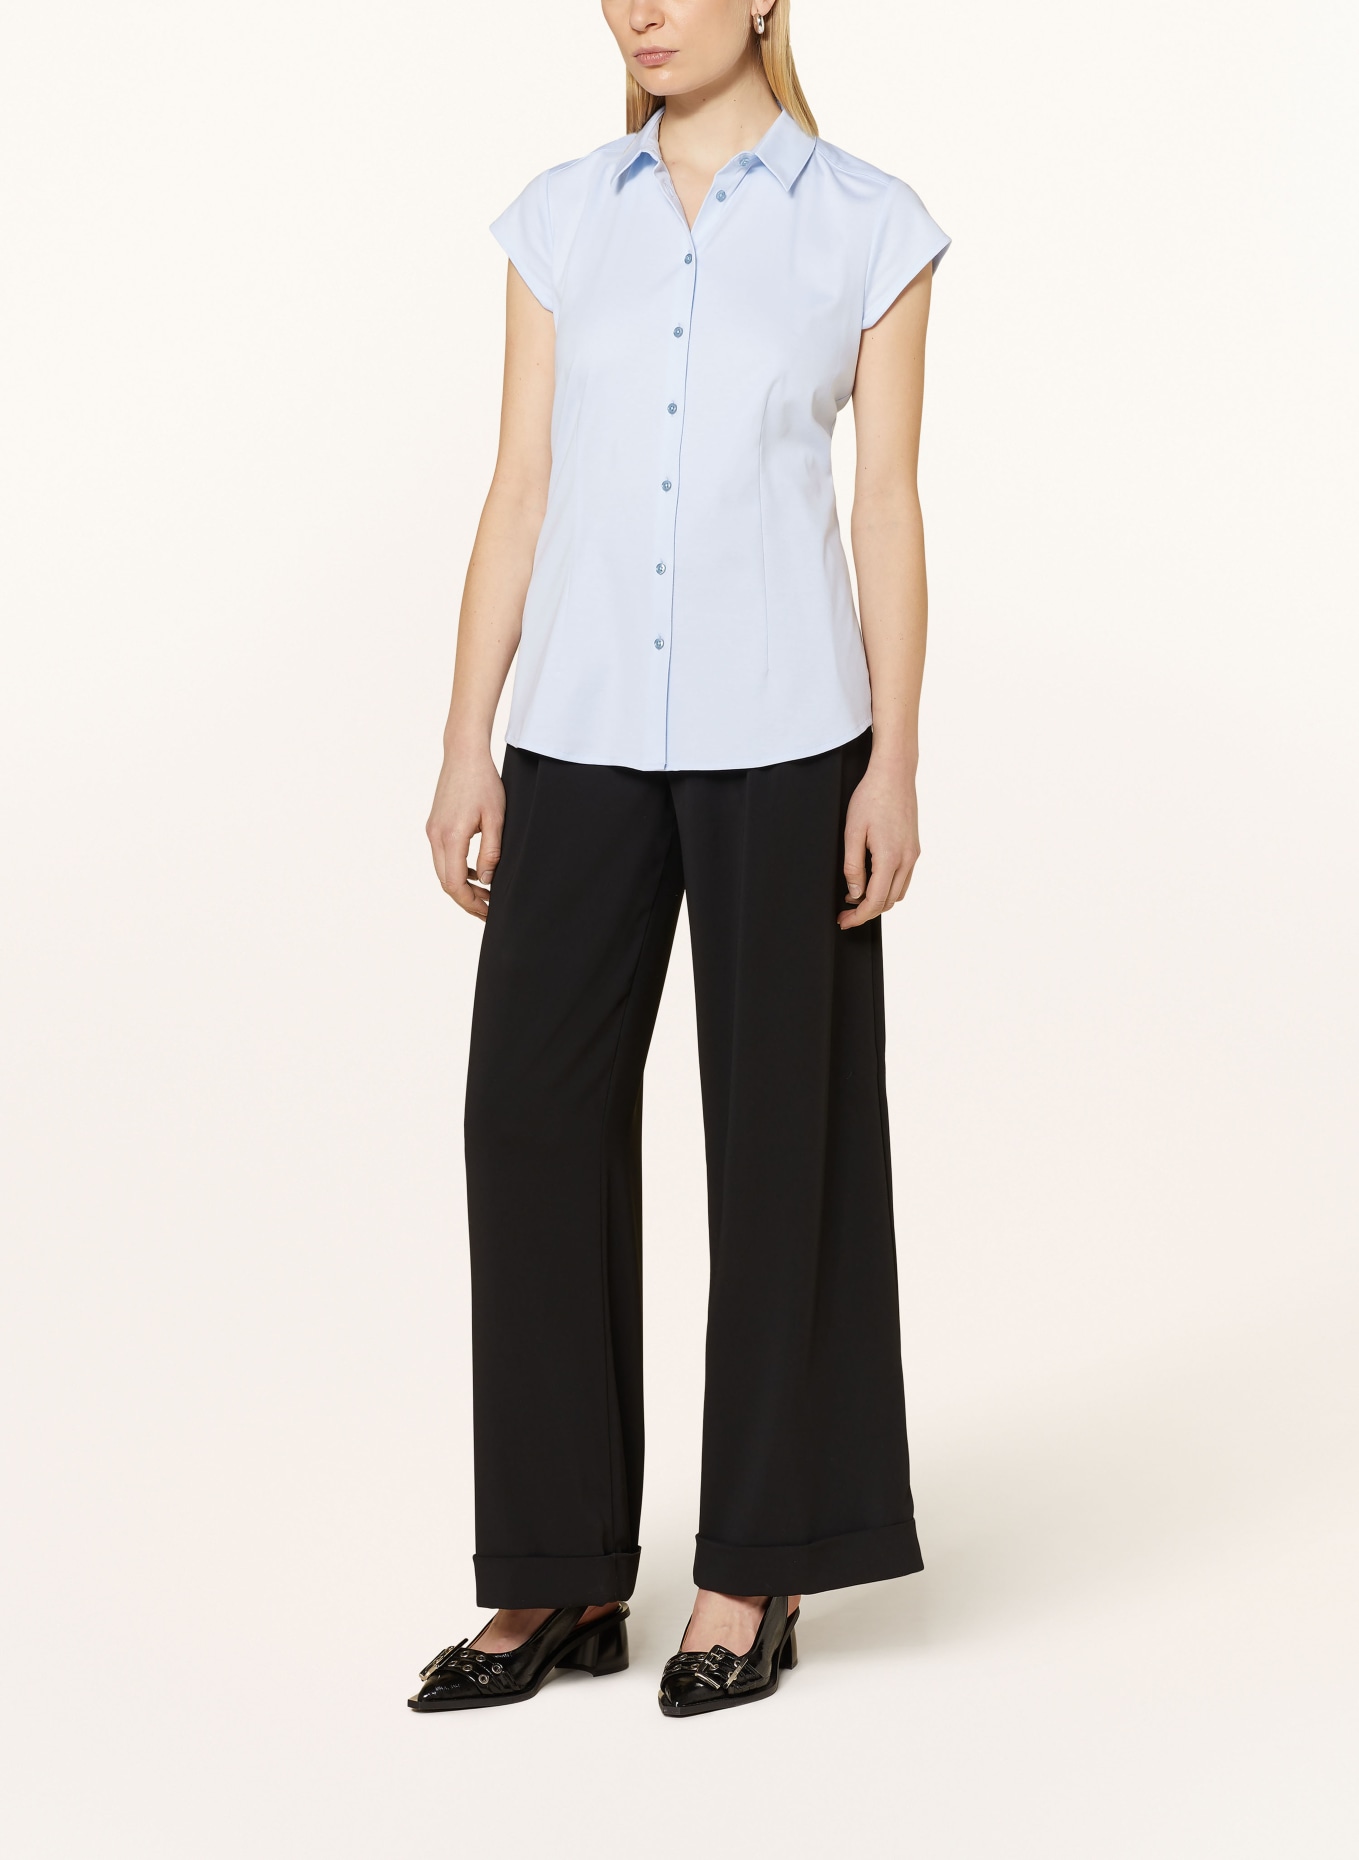 DESOTO Shirt blouse PIA, Color: LIGHT BLUE (Image 2)